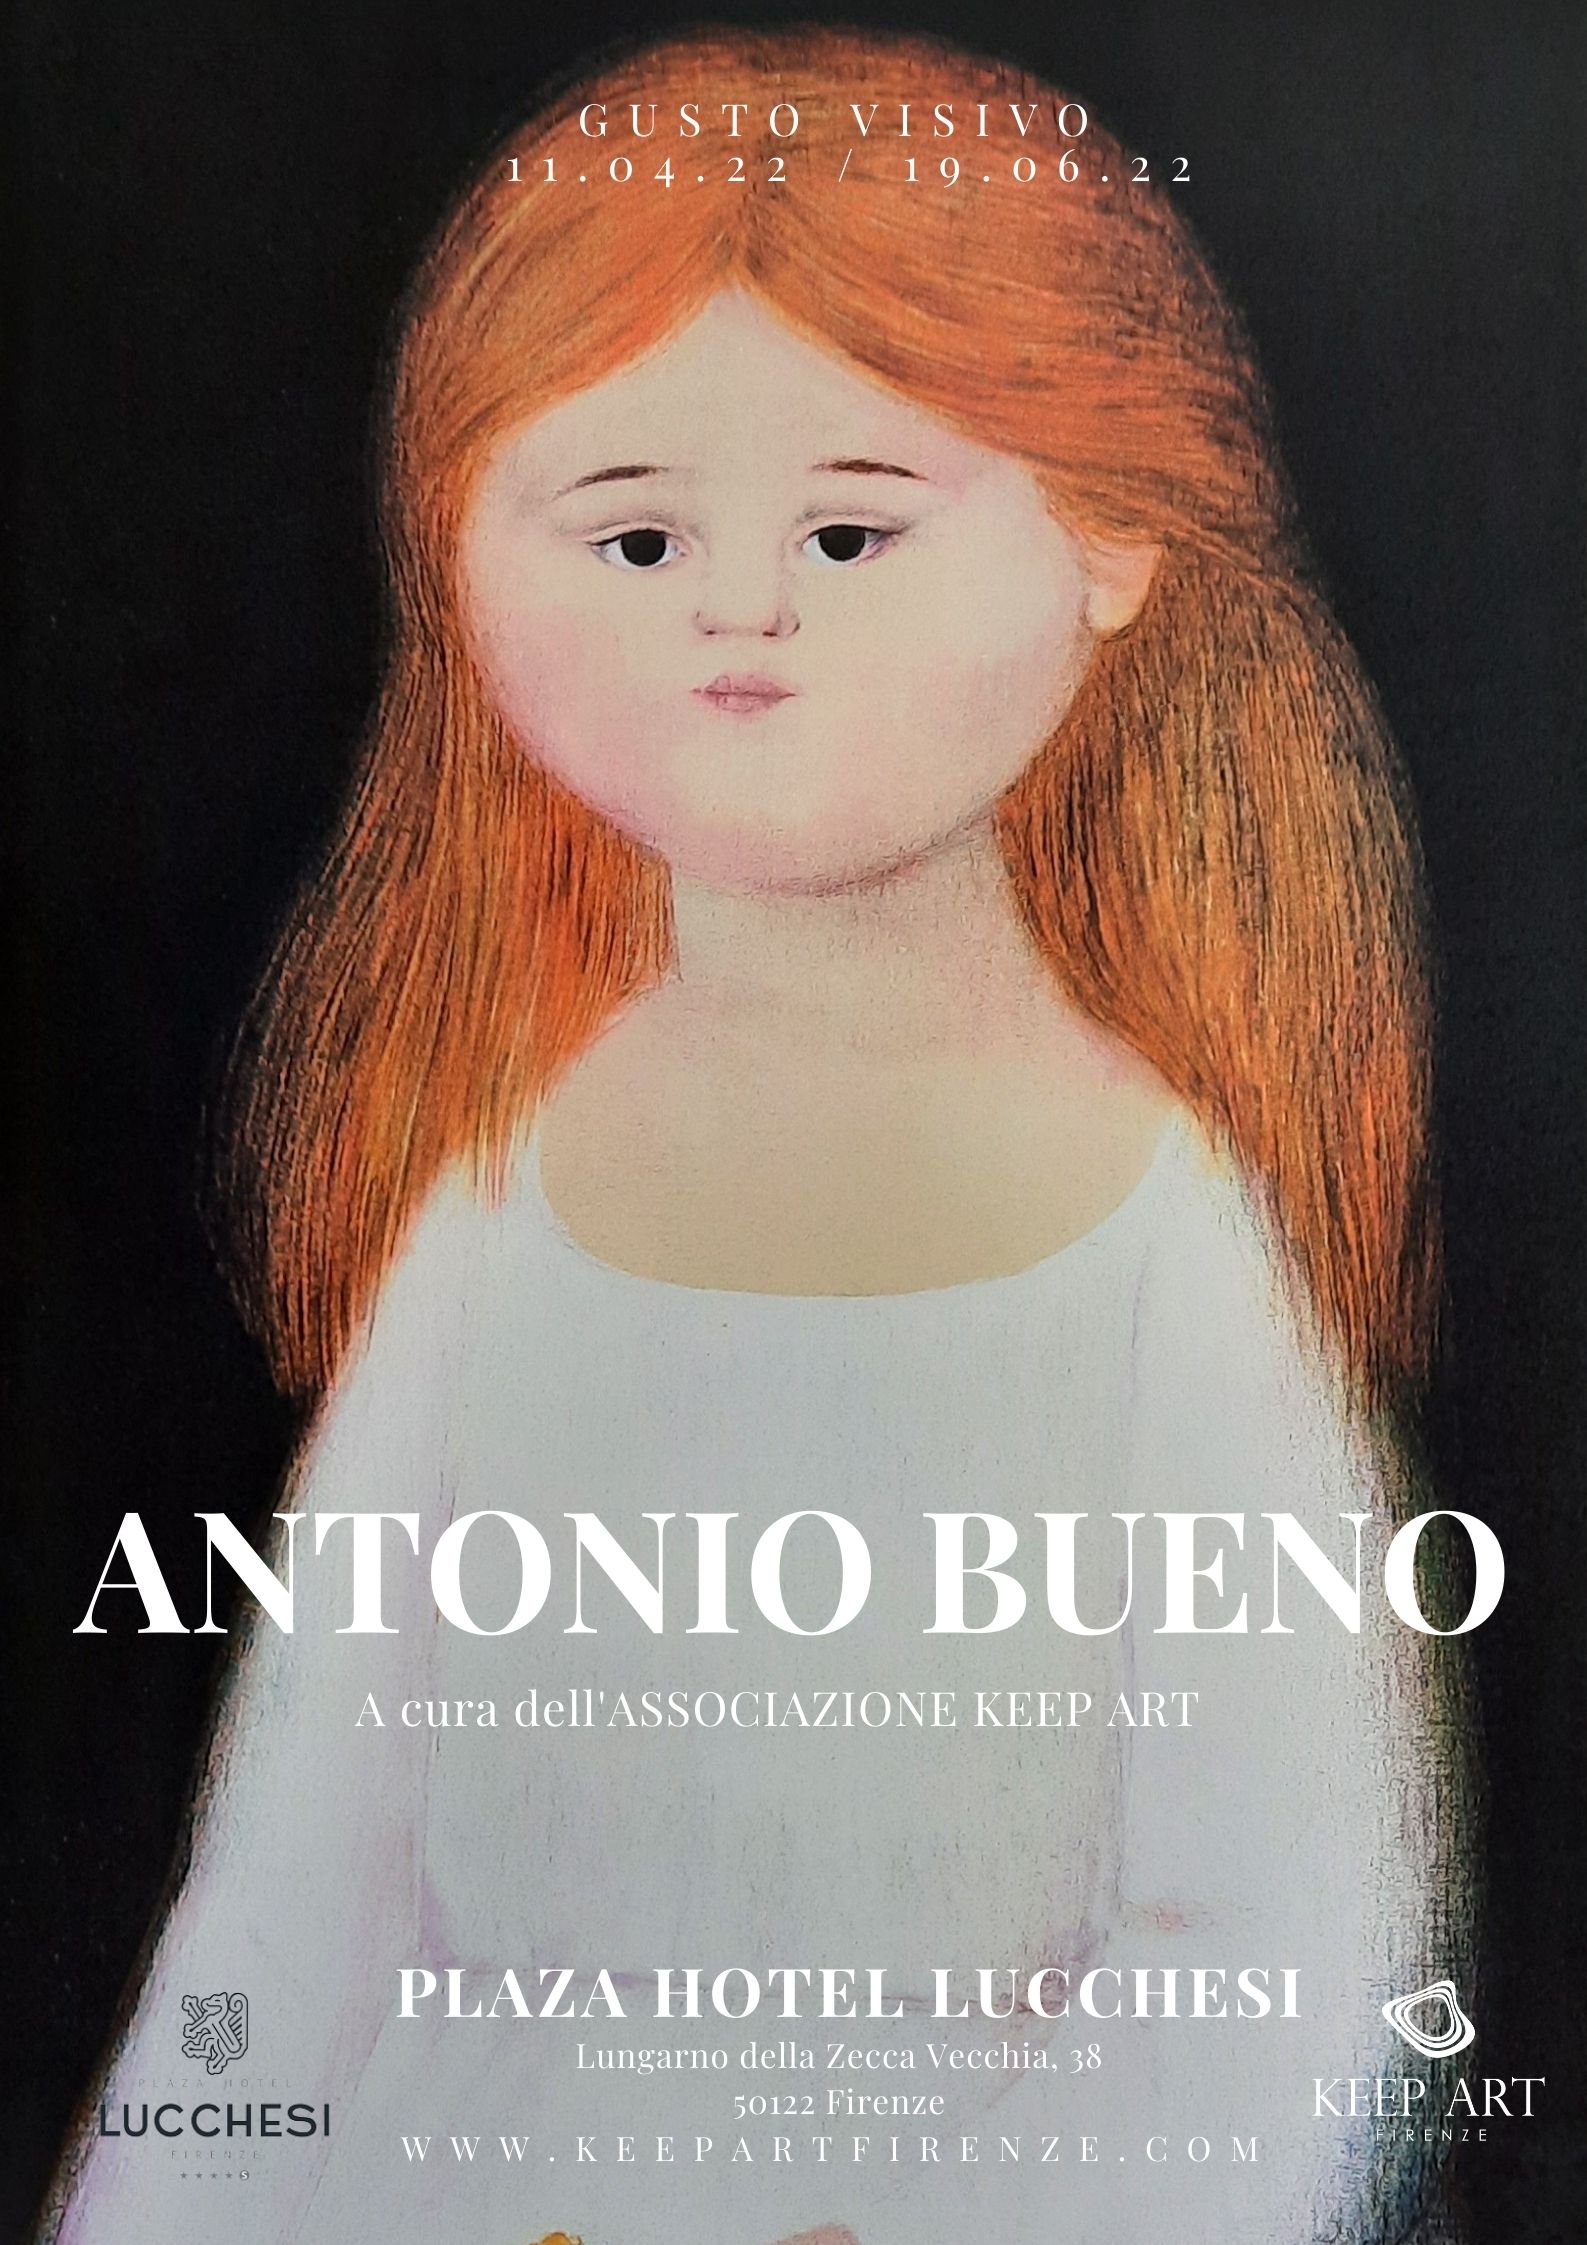 Antonio Bueno - Gusto visivo